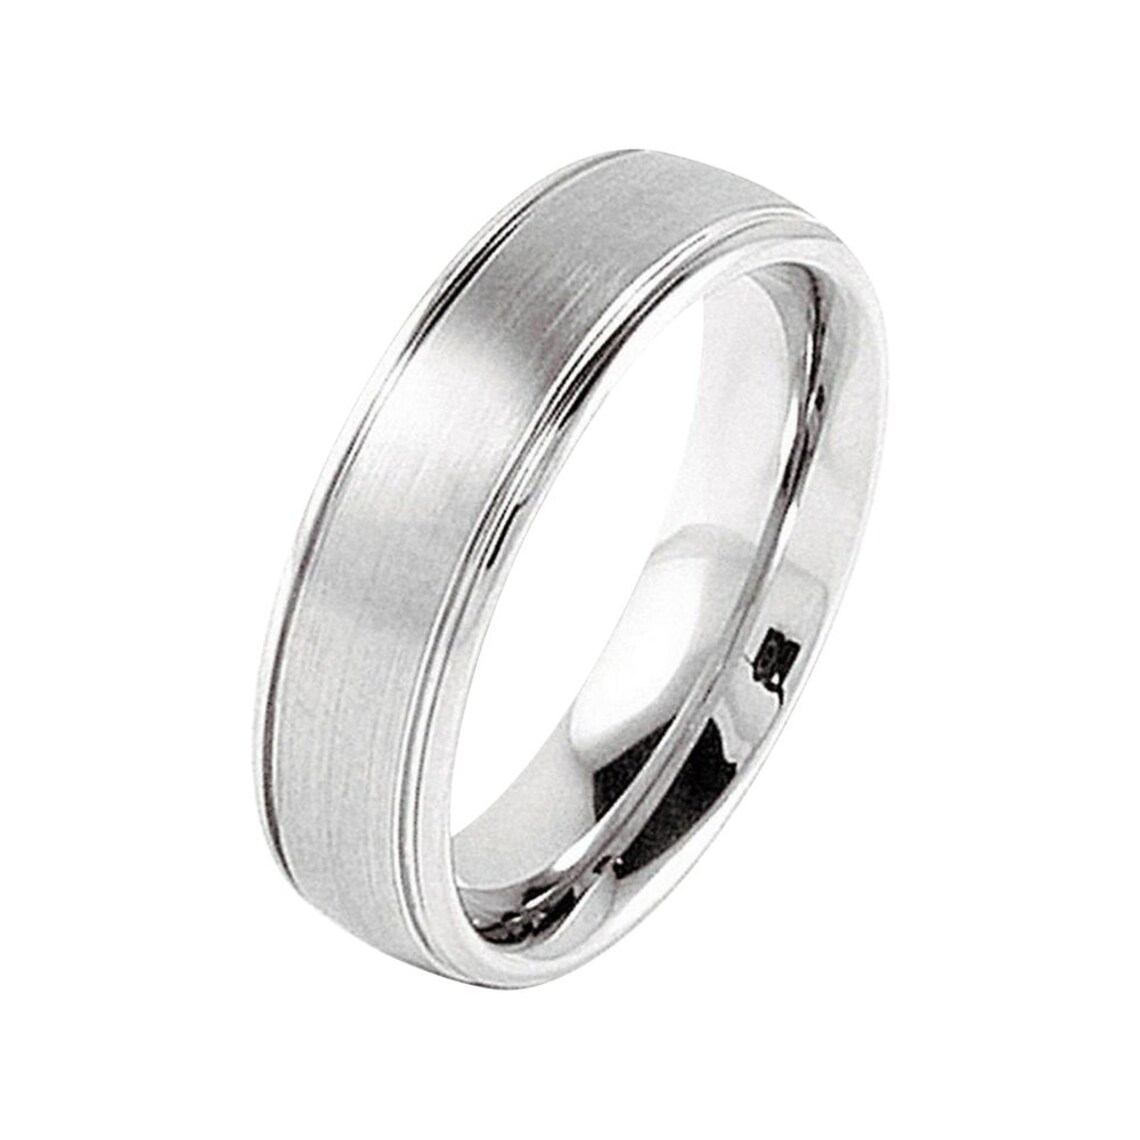 Cobalt Ring Brushed Mens Wedding Band 5mm Silver Cobalt